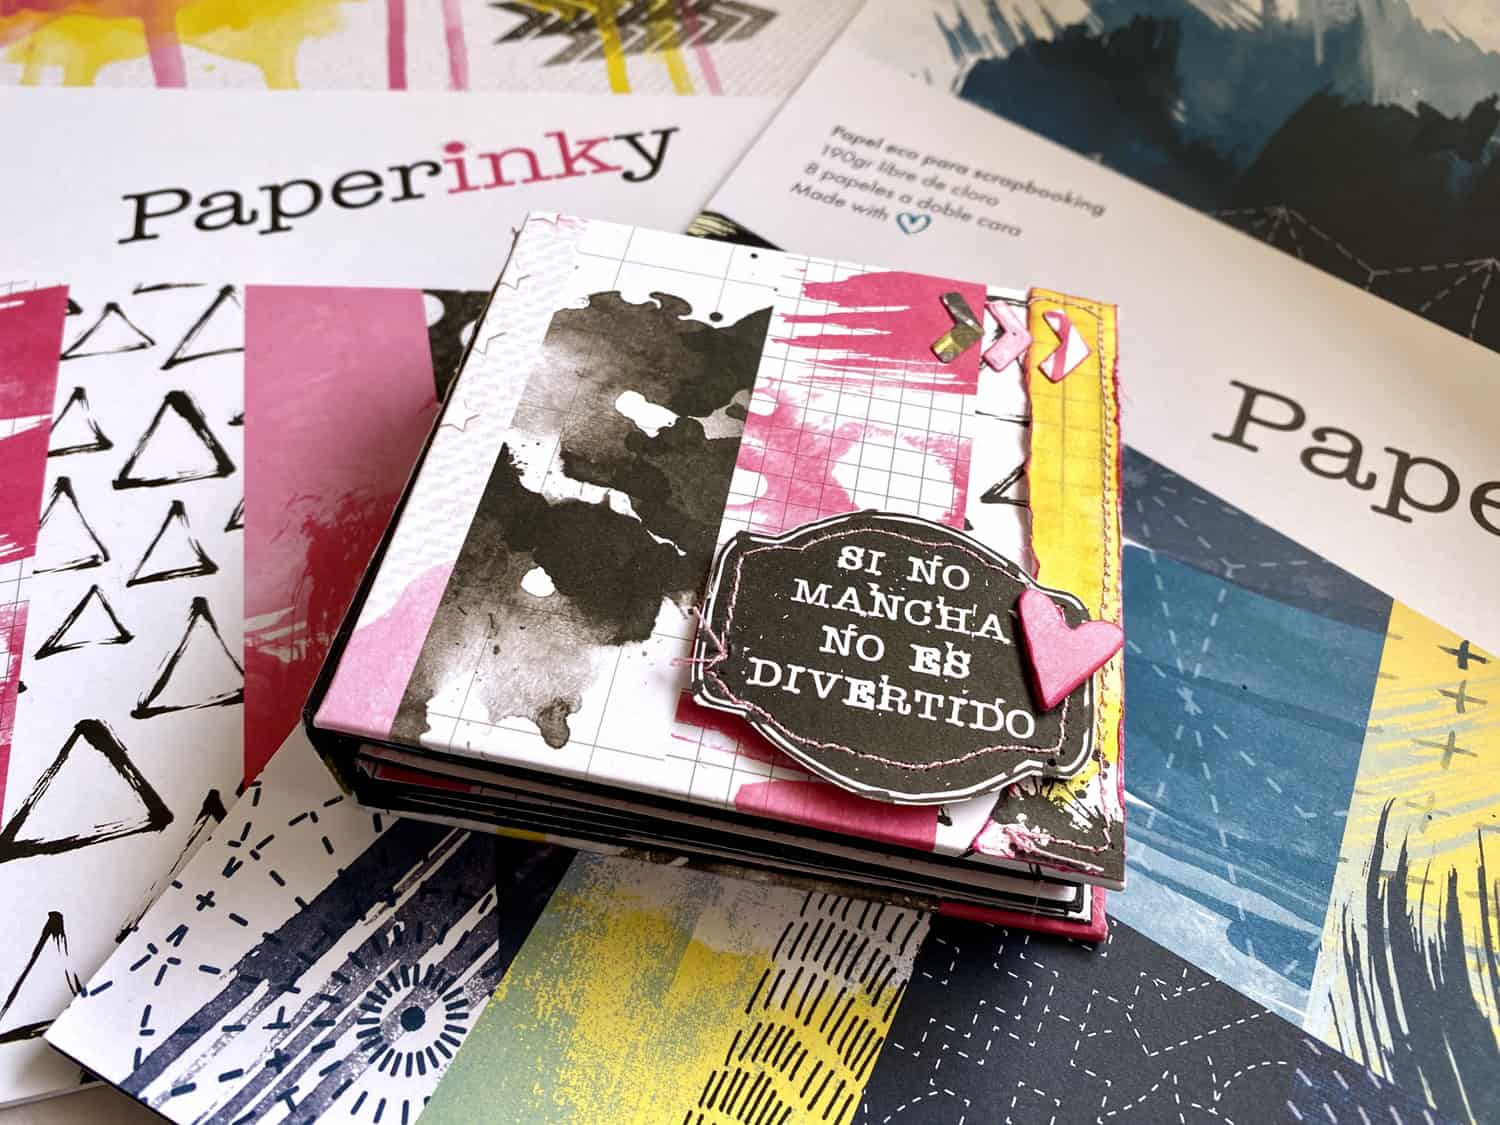 Paperinky Álbum Vero pigmenos y sellos si no mancha